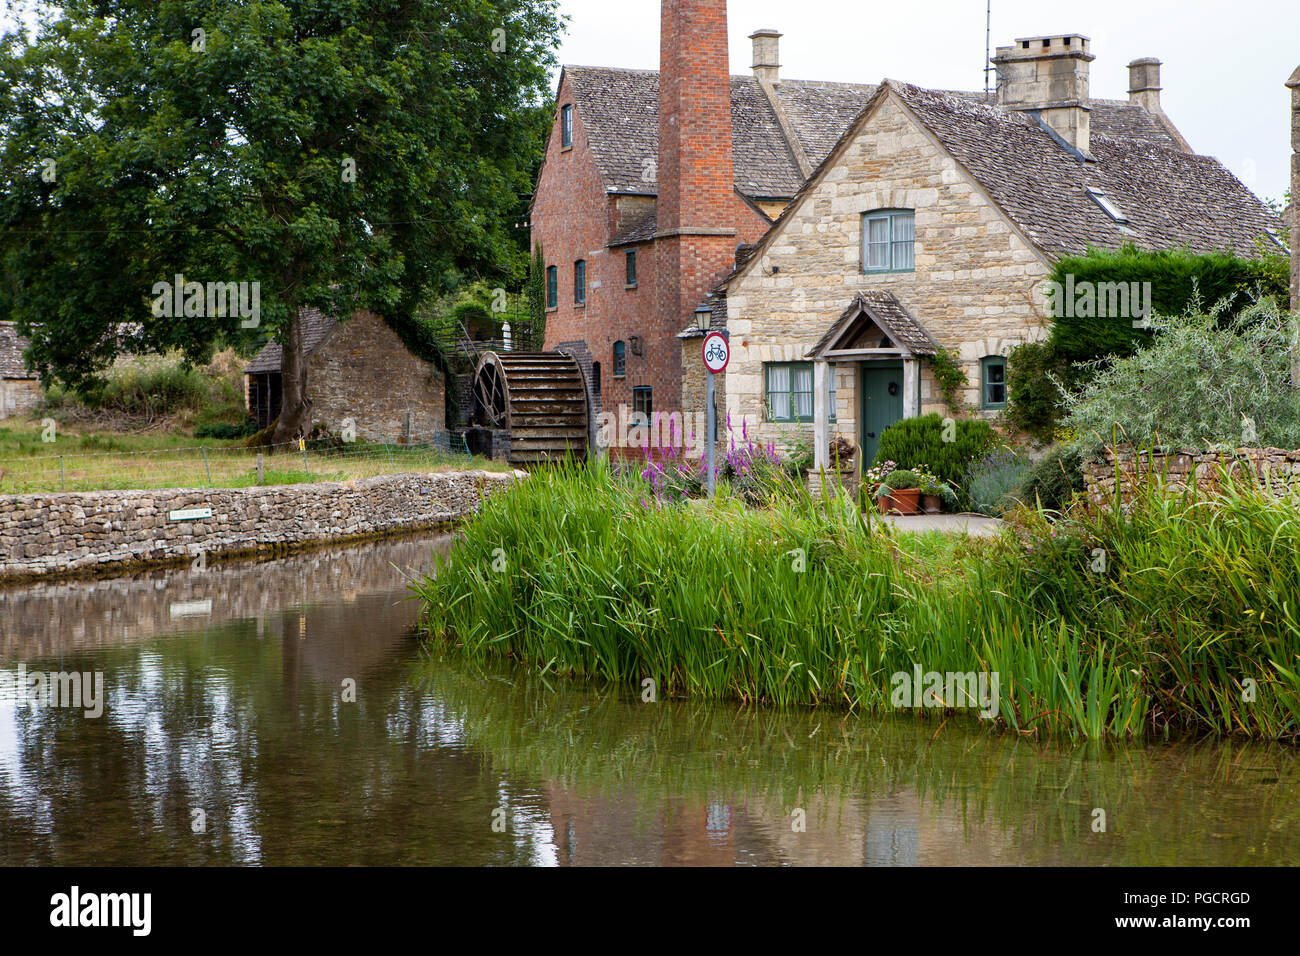 Lower Slaughter, Großbritannien - 9 August 2018: Dieses malerische Dorf sitzt neben dem kleinen Auge stream Stockfoto